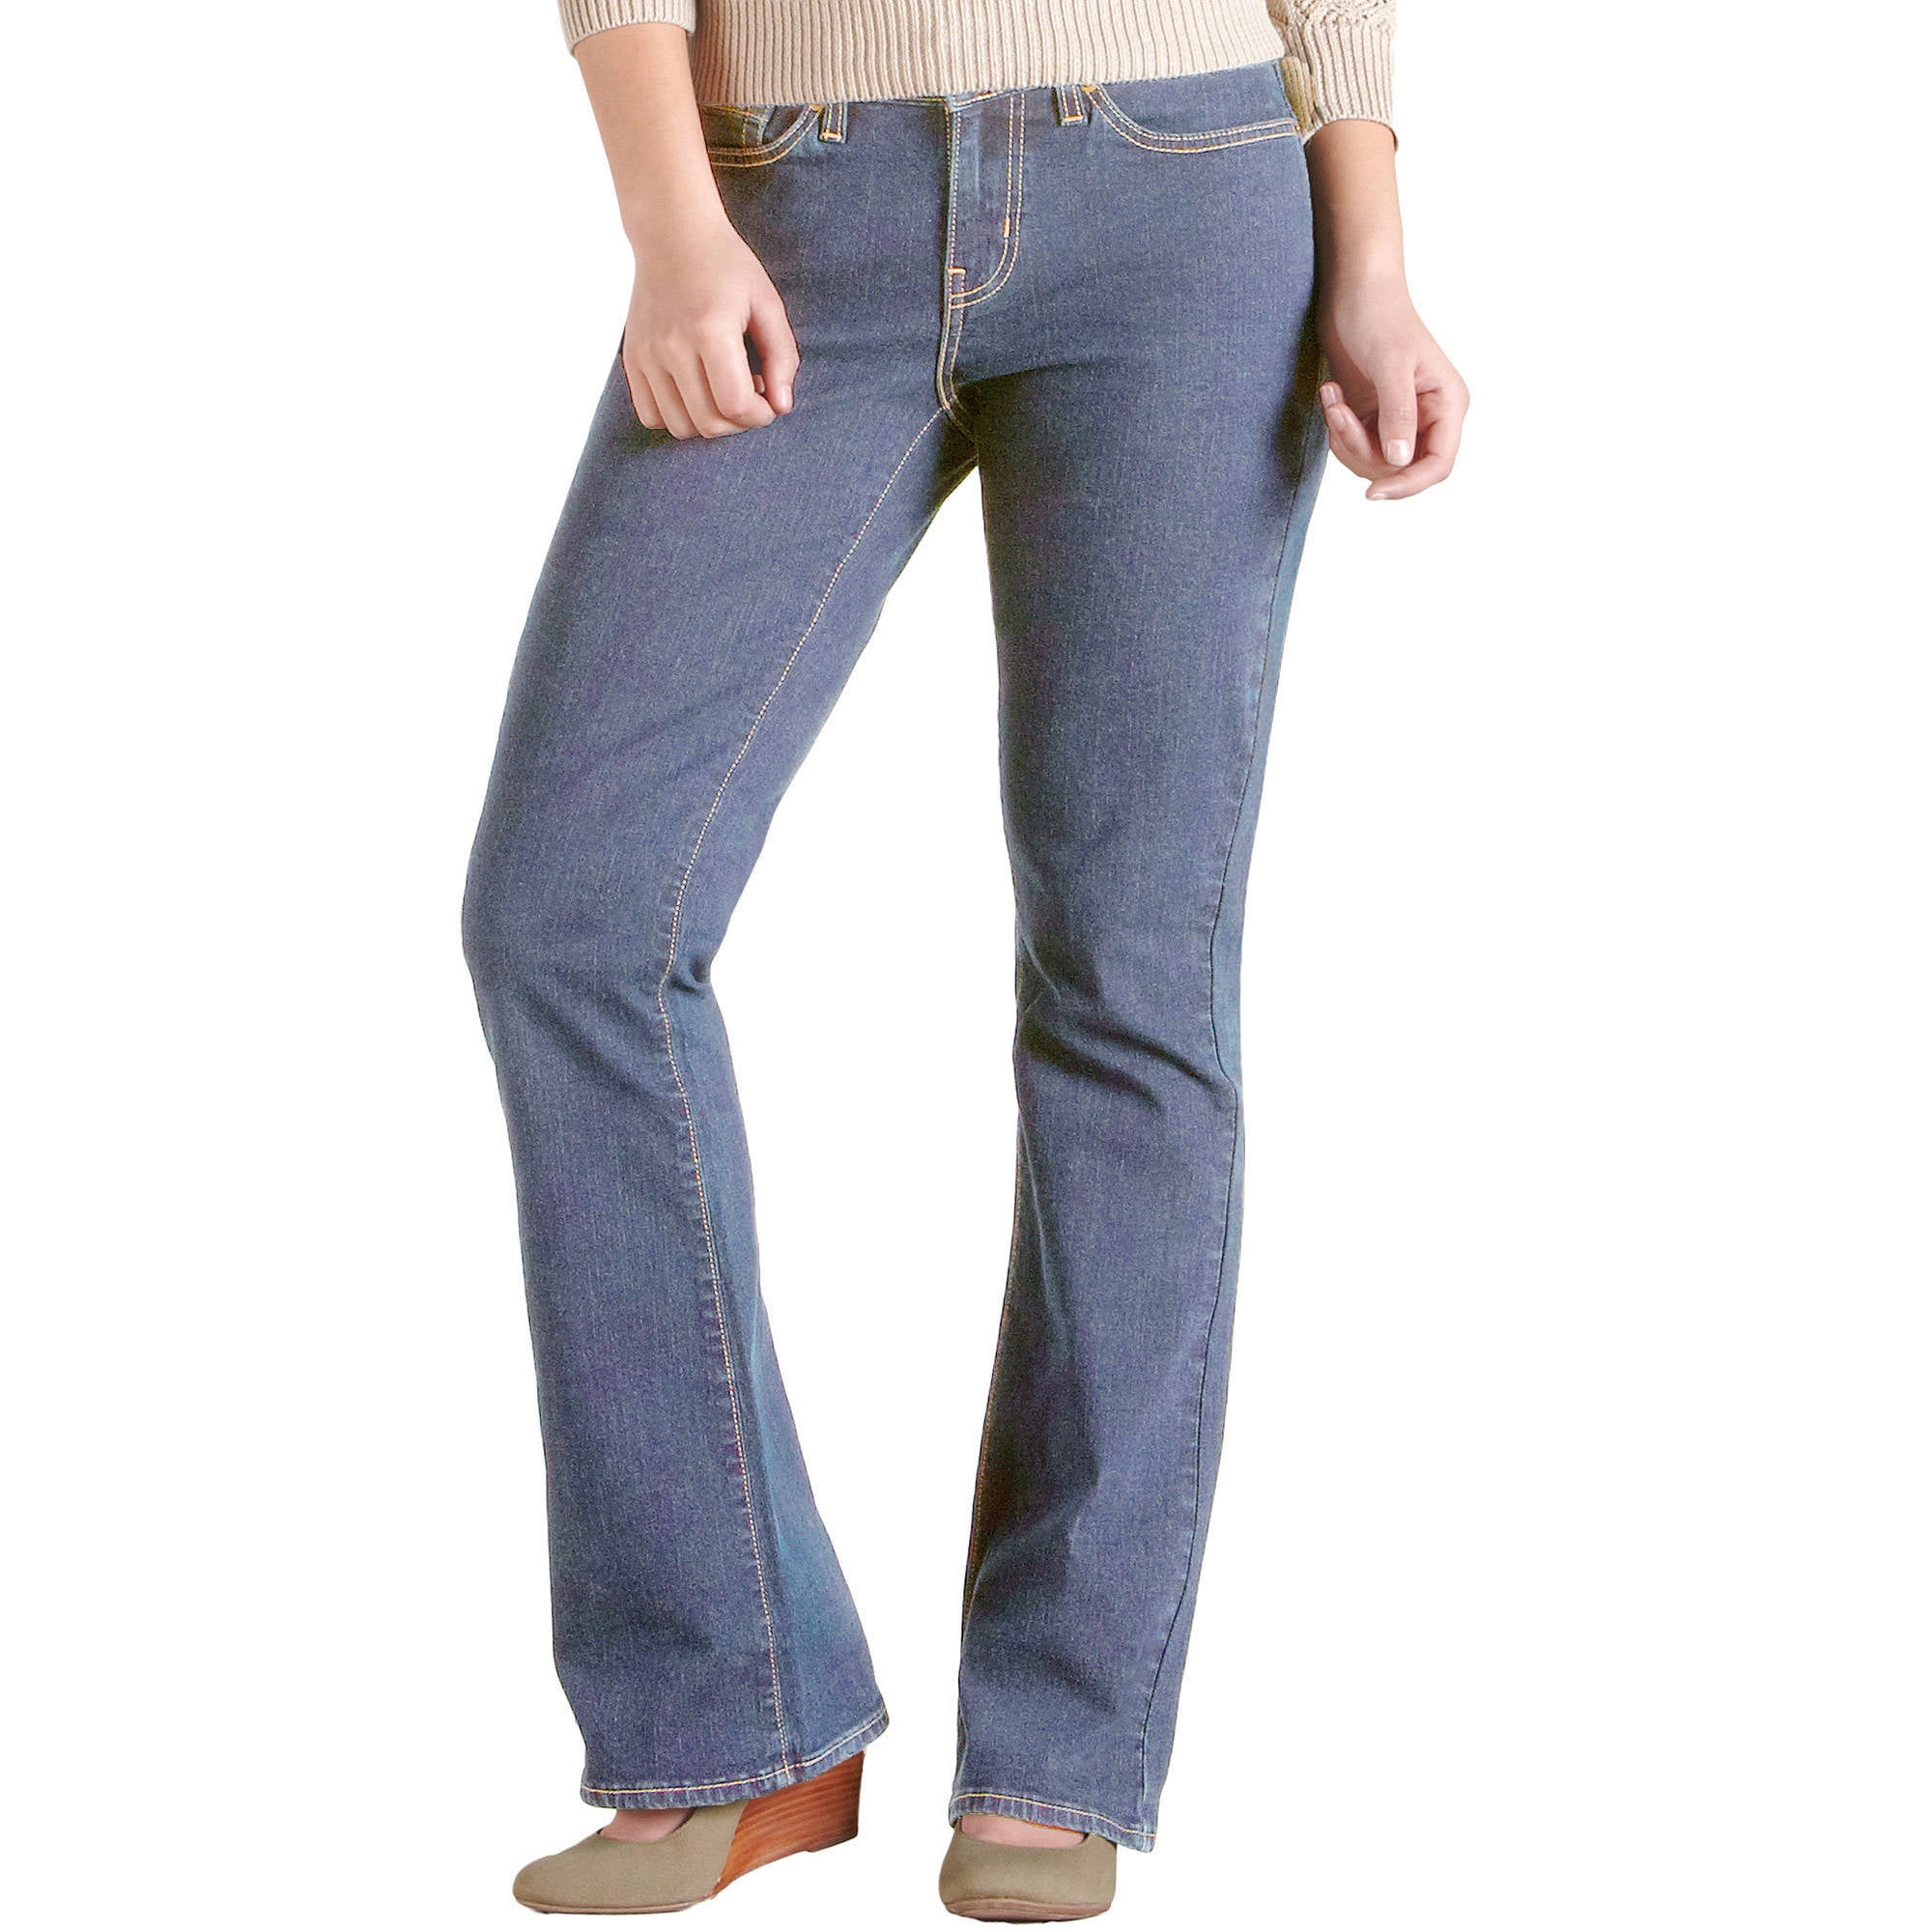 walmart lady jeans